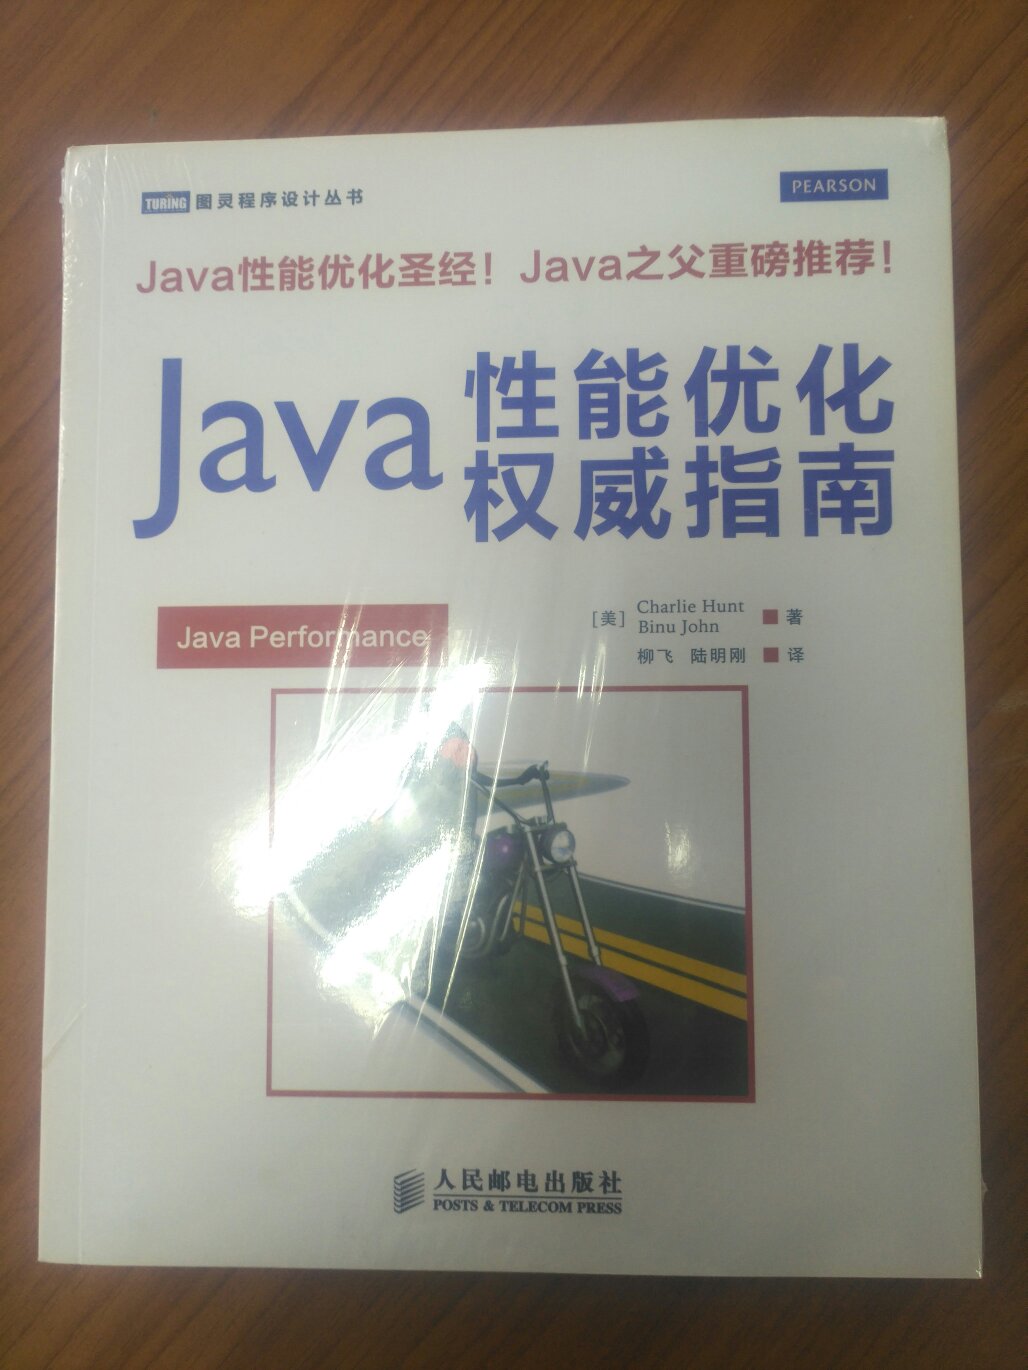 这本书非常不错，可以说是近年来极少数的能够全面讲解Java架构师的书籍，架构师本身是需要庞大的知识体系的，这本书科学的进行了封装，可以说是每个程序员都应该看看，能够系统的学习一下。只有系统的学习了架构师知识体系，才可以在此基础上更好的提升。说说这本书的亮点吧：1、需求调研章节可以说是个亮点，看懂了当项目经理哇。2、Linux常用指令方面也讲得特别好，别出心裁吧，简单易懂。3、架构师思想章节全面的讲解了Java知识，实例丰富、易懂，不论初学者还是有经验的都适用。还讲解了一些其他的内容，比如WebService、抽象类和接口的例子超经典，读一遍就能记住，面试福音。4、函数、游标的例子很好。5、SSH管理系统方面，深入讲解了权限系统（以前对这方面很懵），加入了POI操作，还有Ehcache、Nginx、Redis的集成，这是个亮点。6、Spring MVC章节通过一个简单的项目，让读者在极短的时间内学会该框架的搭建。7、电商平台重点讲解支付接口，非常细致深入，一看就会。8、产品思维讲解了Bootstrap插件，ECharts图表，可以说是非常棒了。9、项目运维主要讲解了SonarQube代码扫描平台，并且通过PMD和Java插件方式来开发扫描规则，这在国内也没有多少实例。